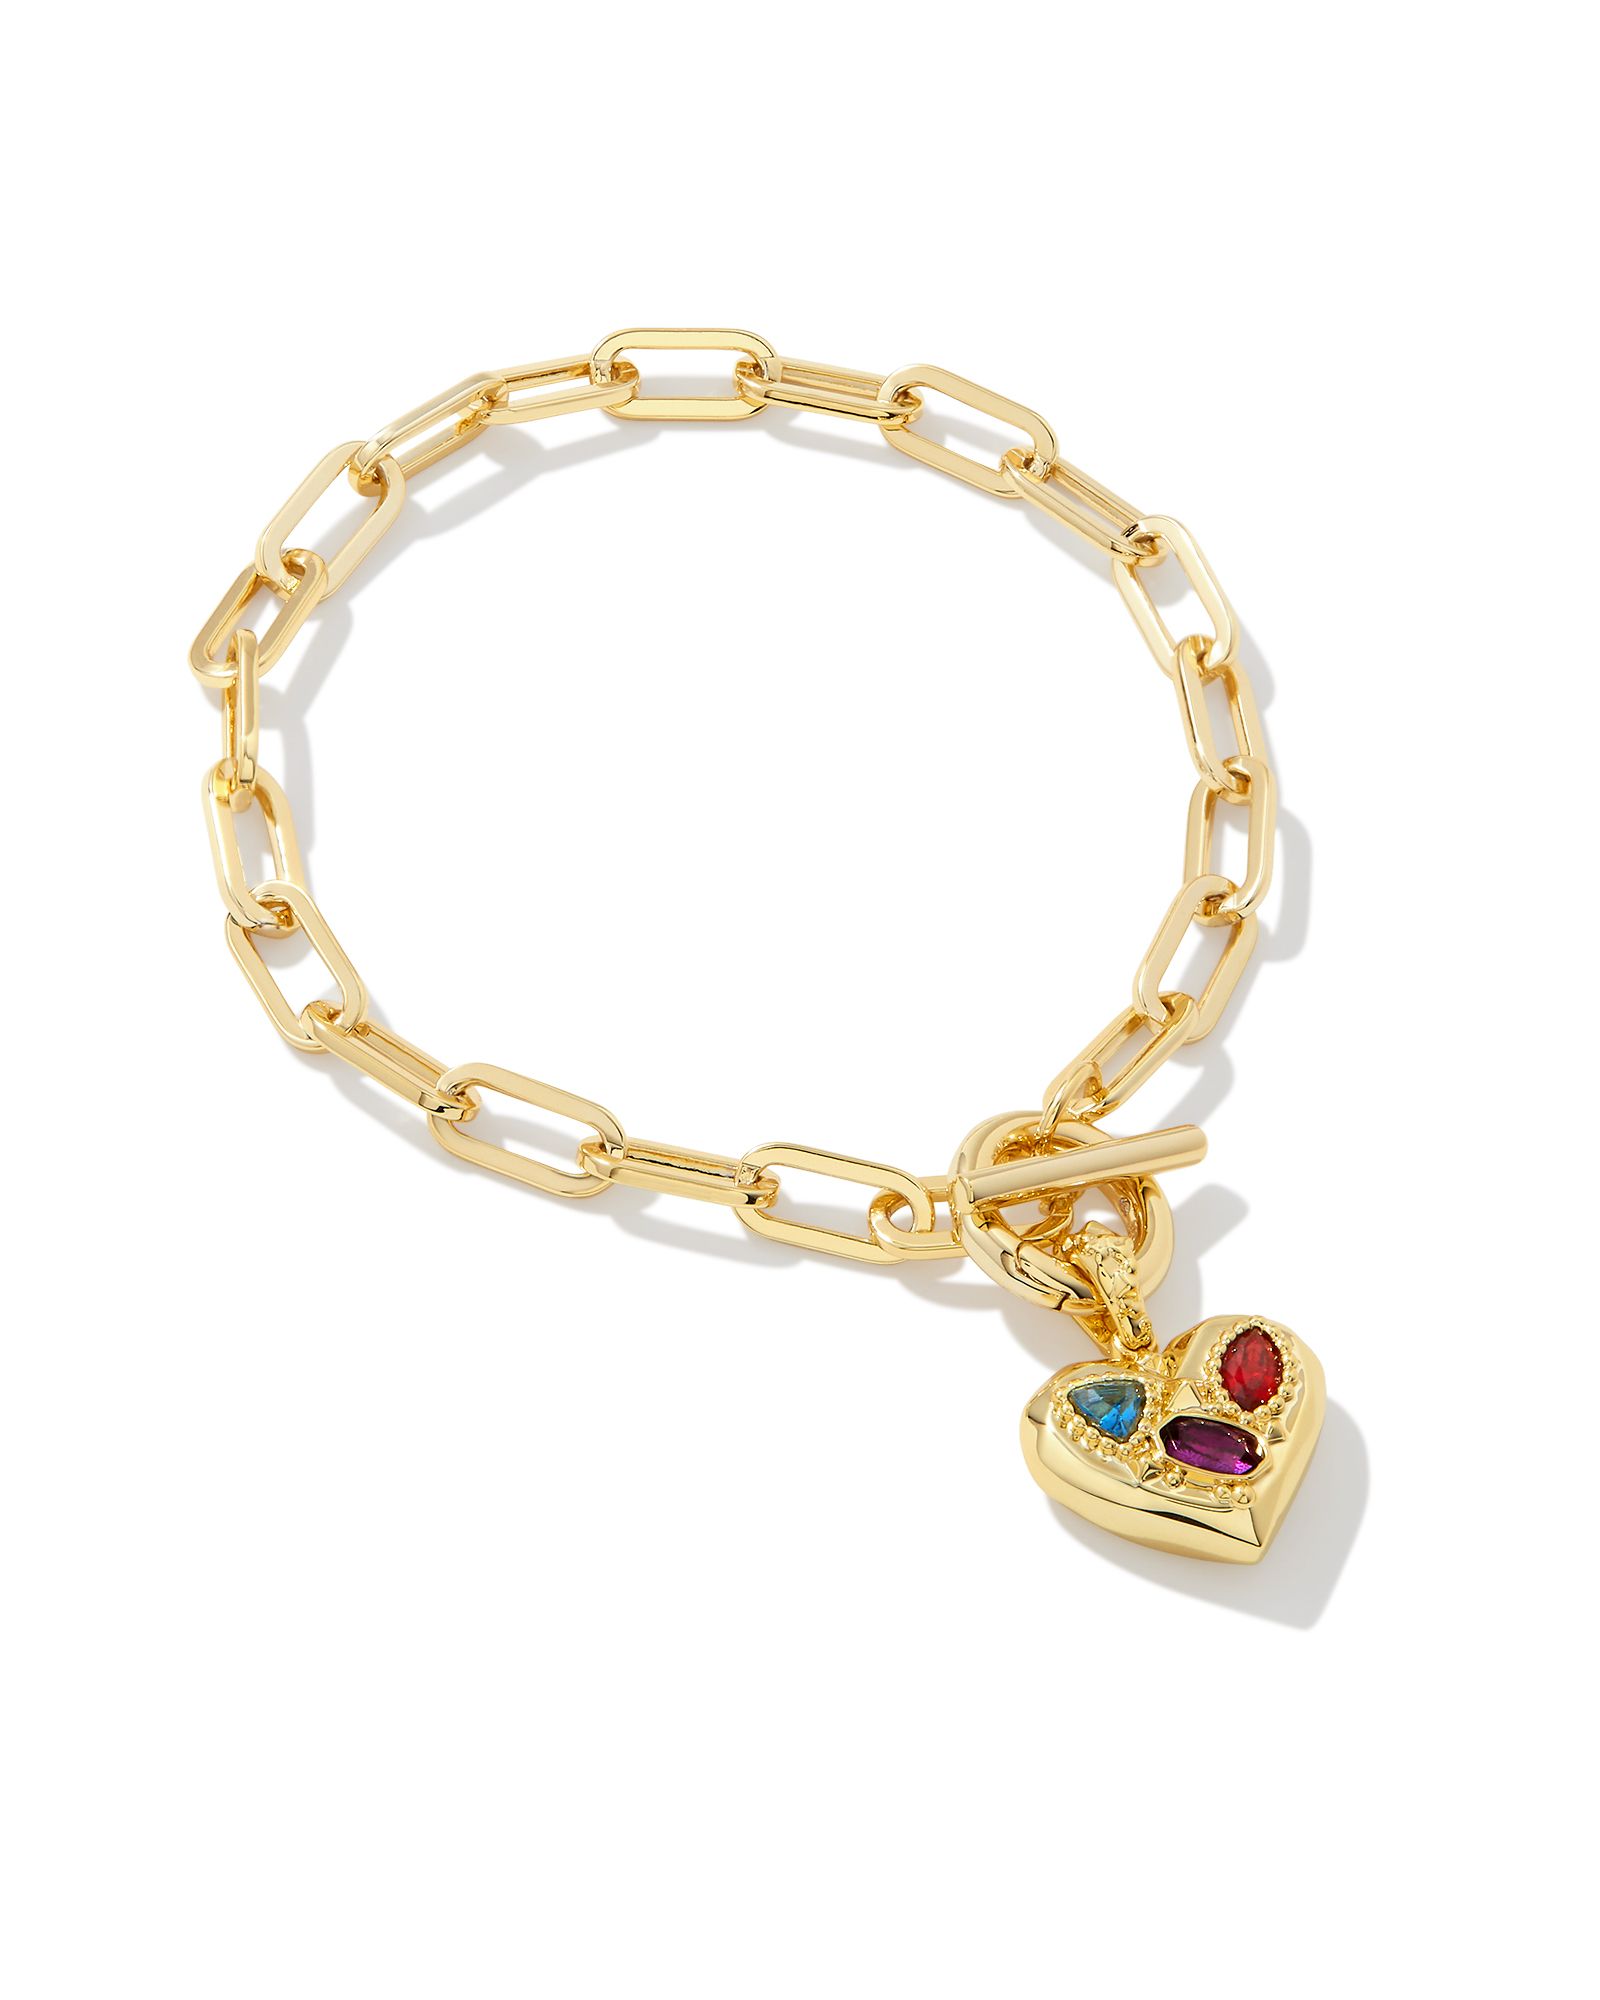 Penny Gold Heart Chain Bracelet in Multi Mix | Kendra Scott | Kendra Scott